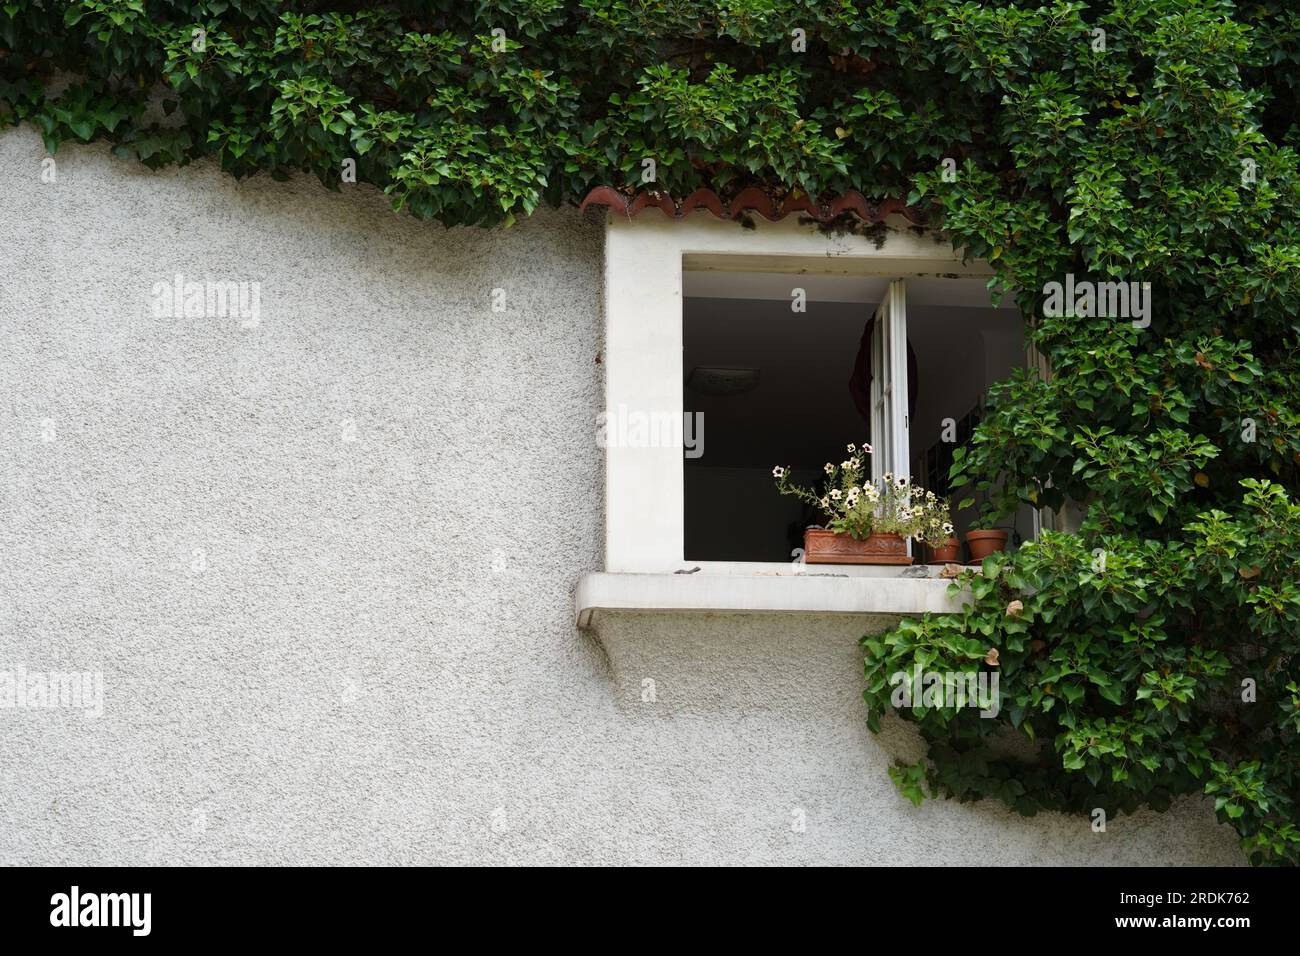 Un mur de maison blanche avec une fenêtre ouverte. Le mur est partiellement recouvert de lierre vert foncé. Il y a beaucoup d'espace de copie. Banque D'Images